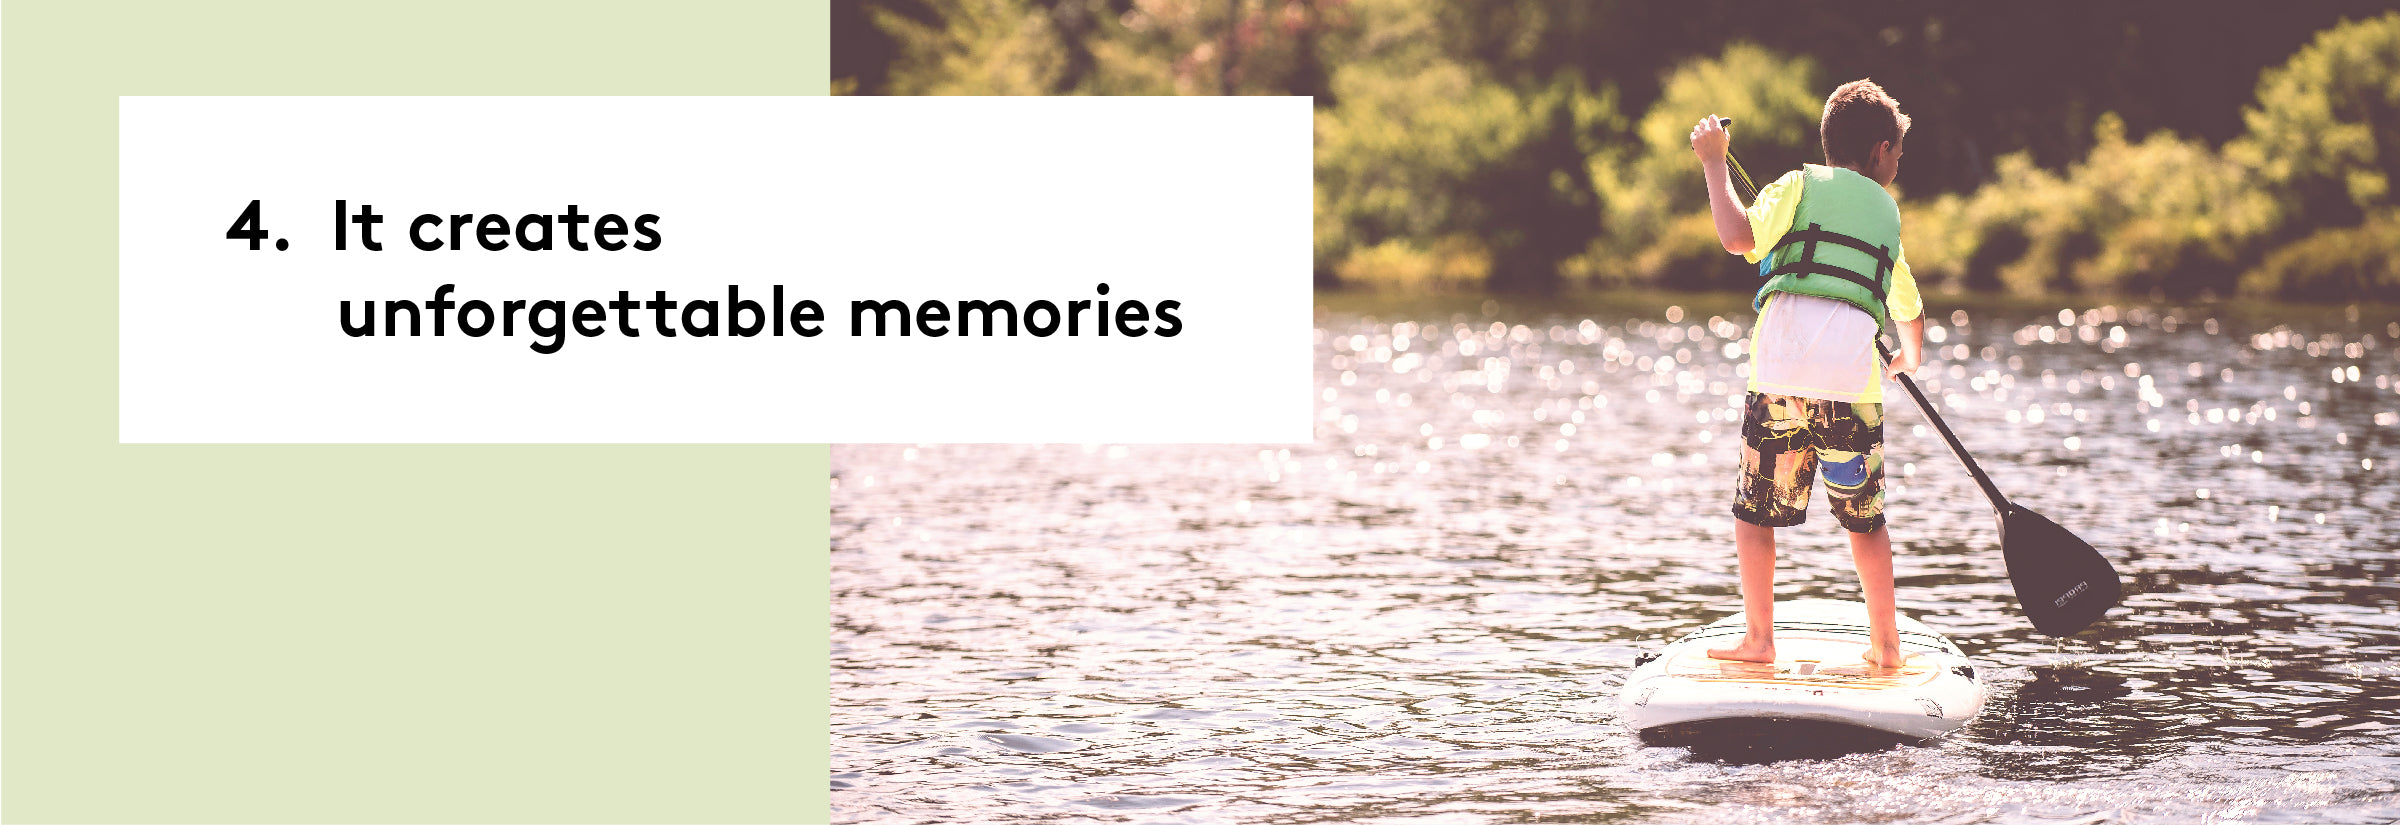 4. It creates unforgettable memories